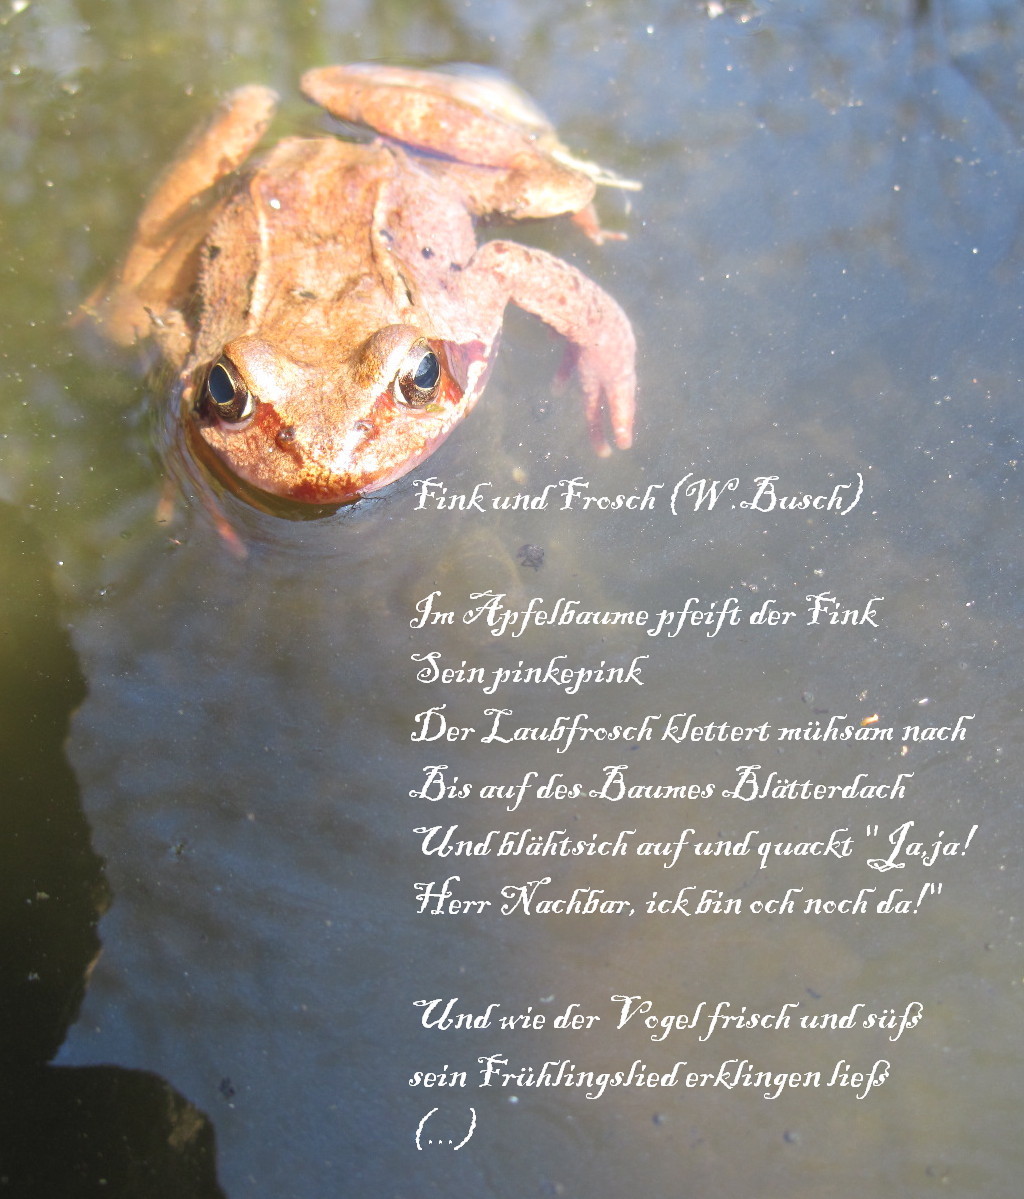 "Fink und Frosch" von W. busch, Inspiraionsquelle: das Gedicht